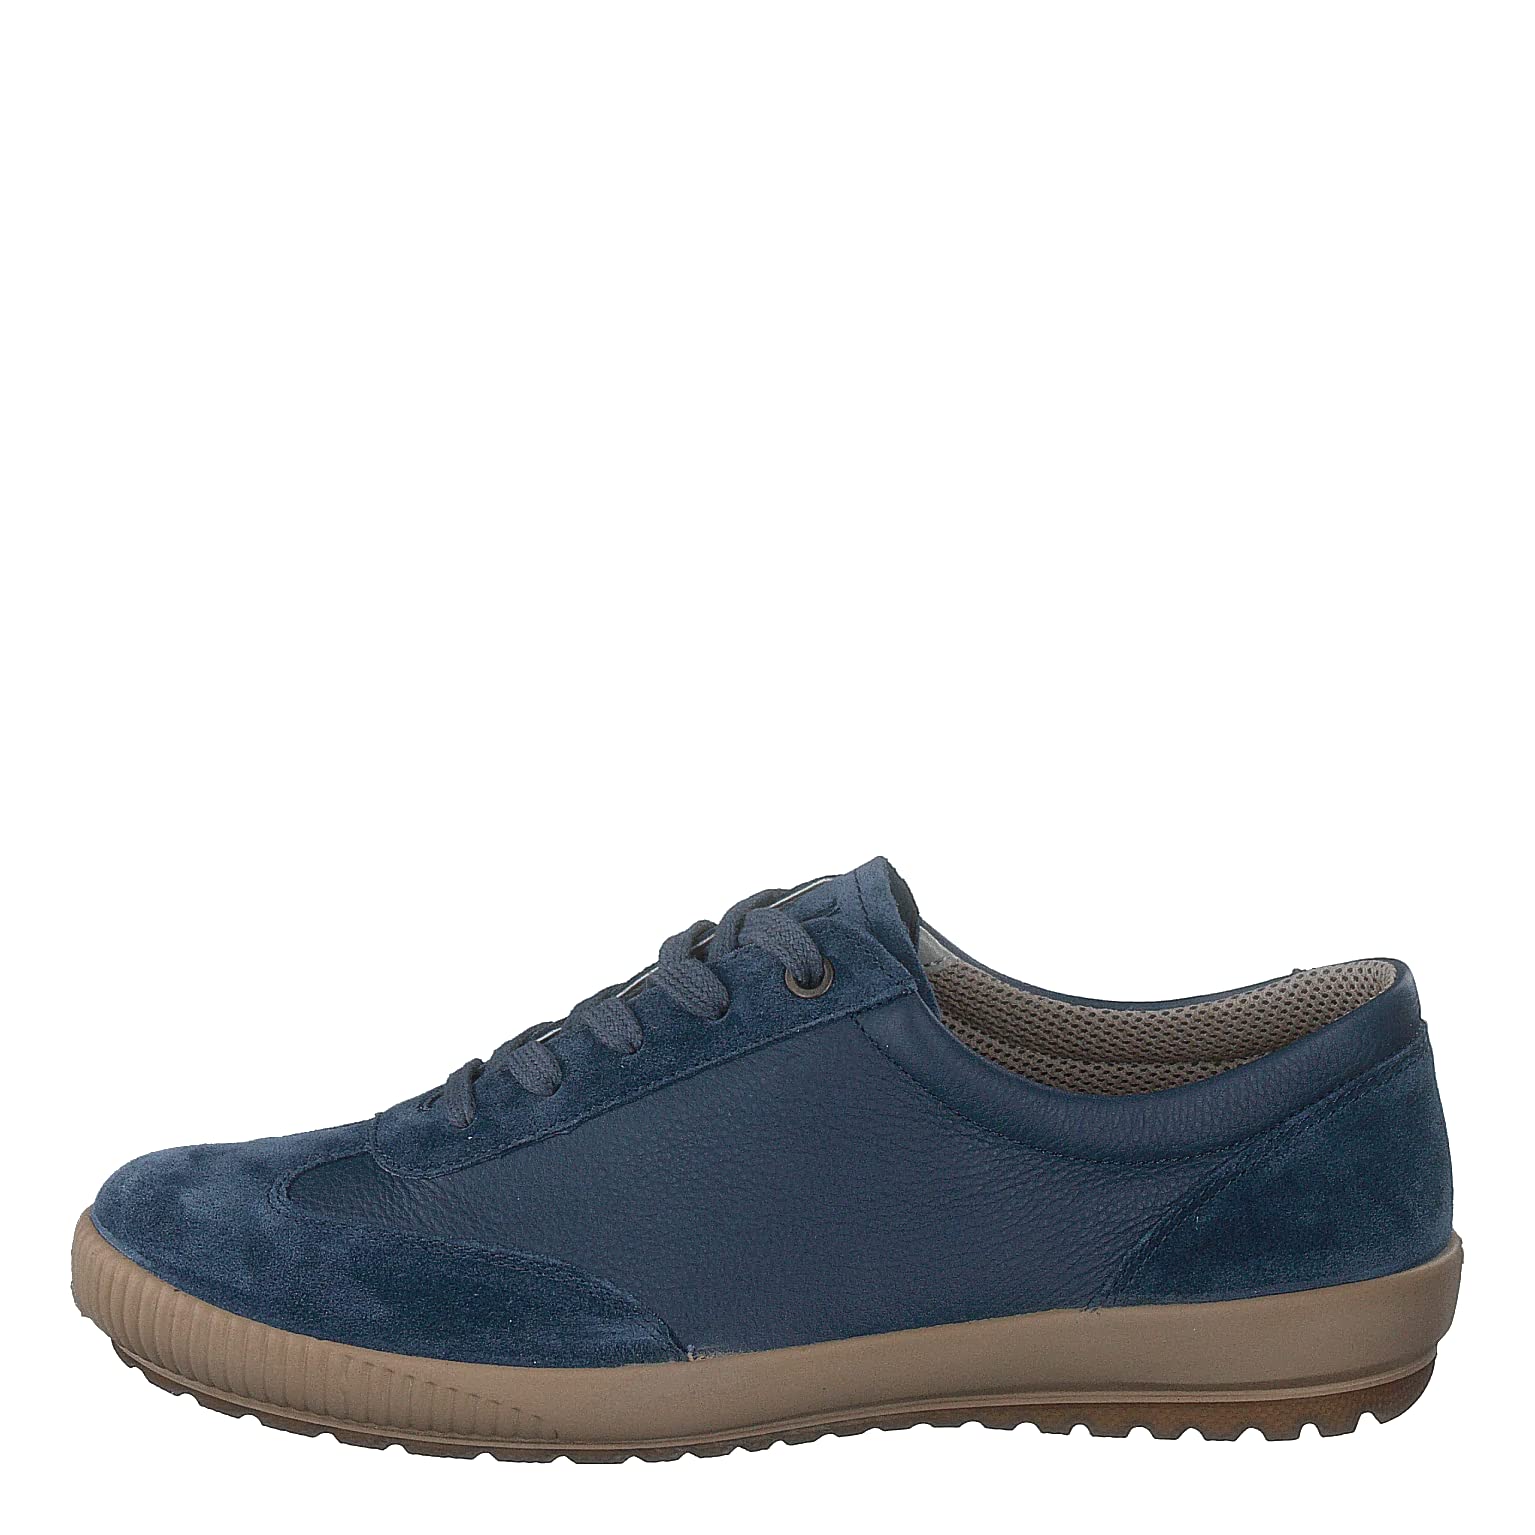 Legero Damen Tanaro Sneakers, Blau (Indaco (Blau) 86), 39 EU (6 UK)